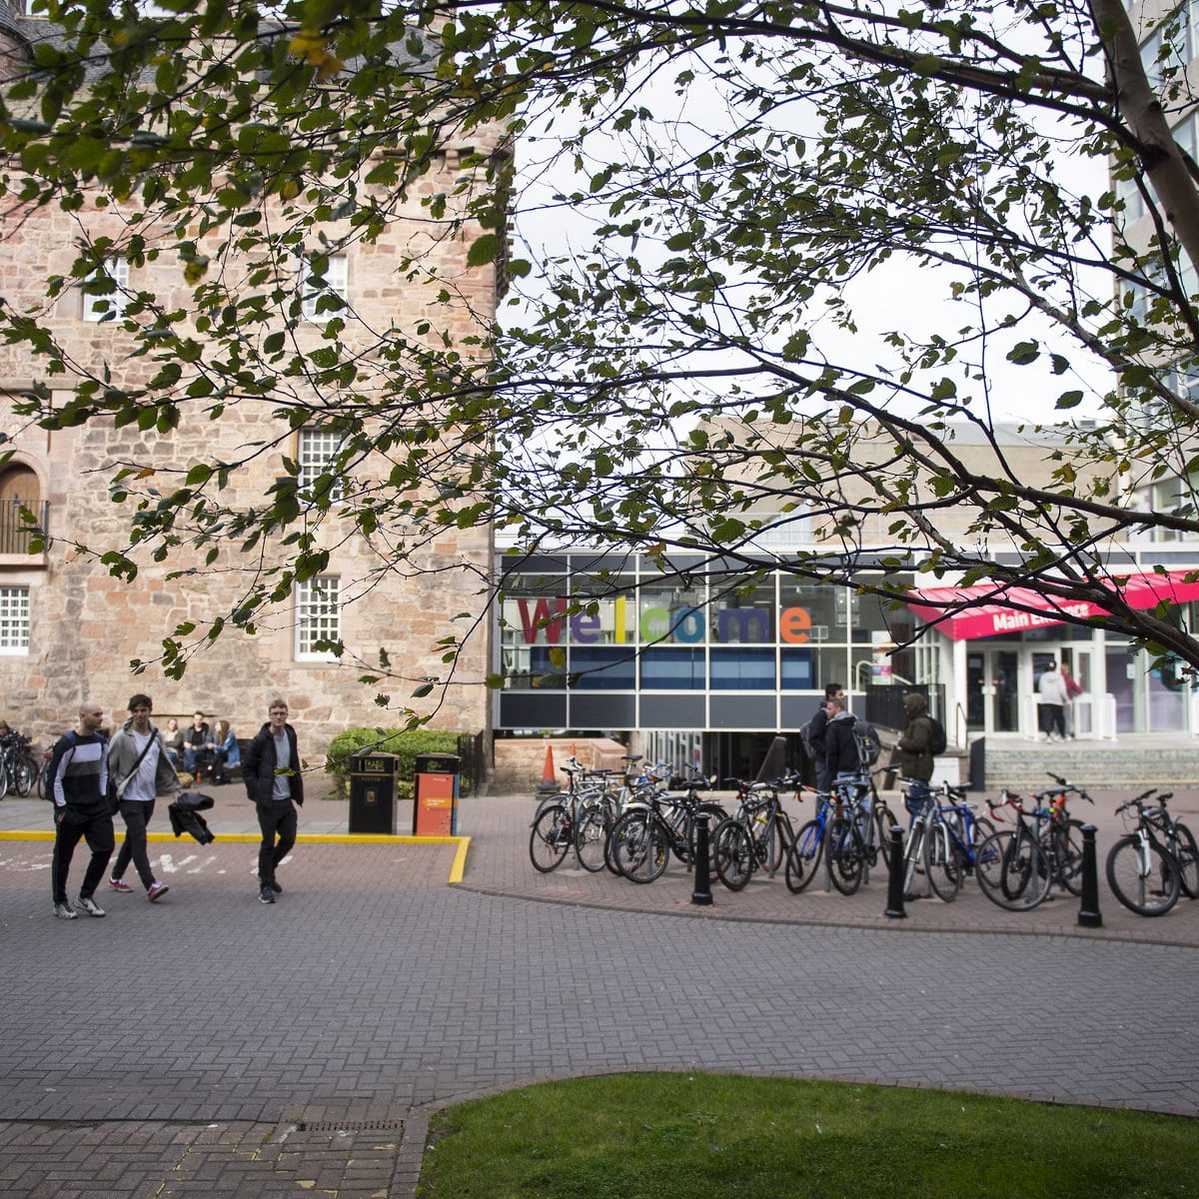 Semester in Edinburgh - Edinburgh Napier University